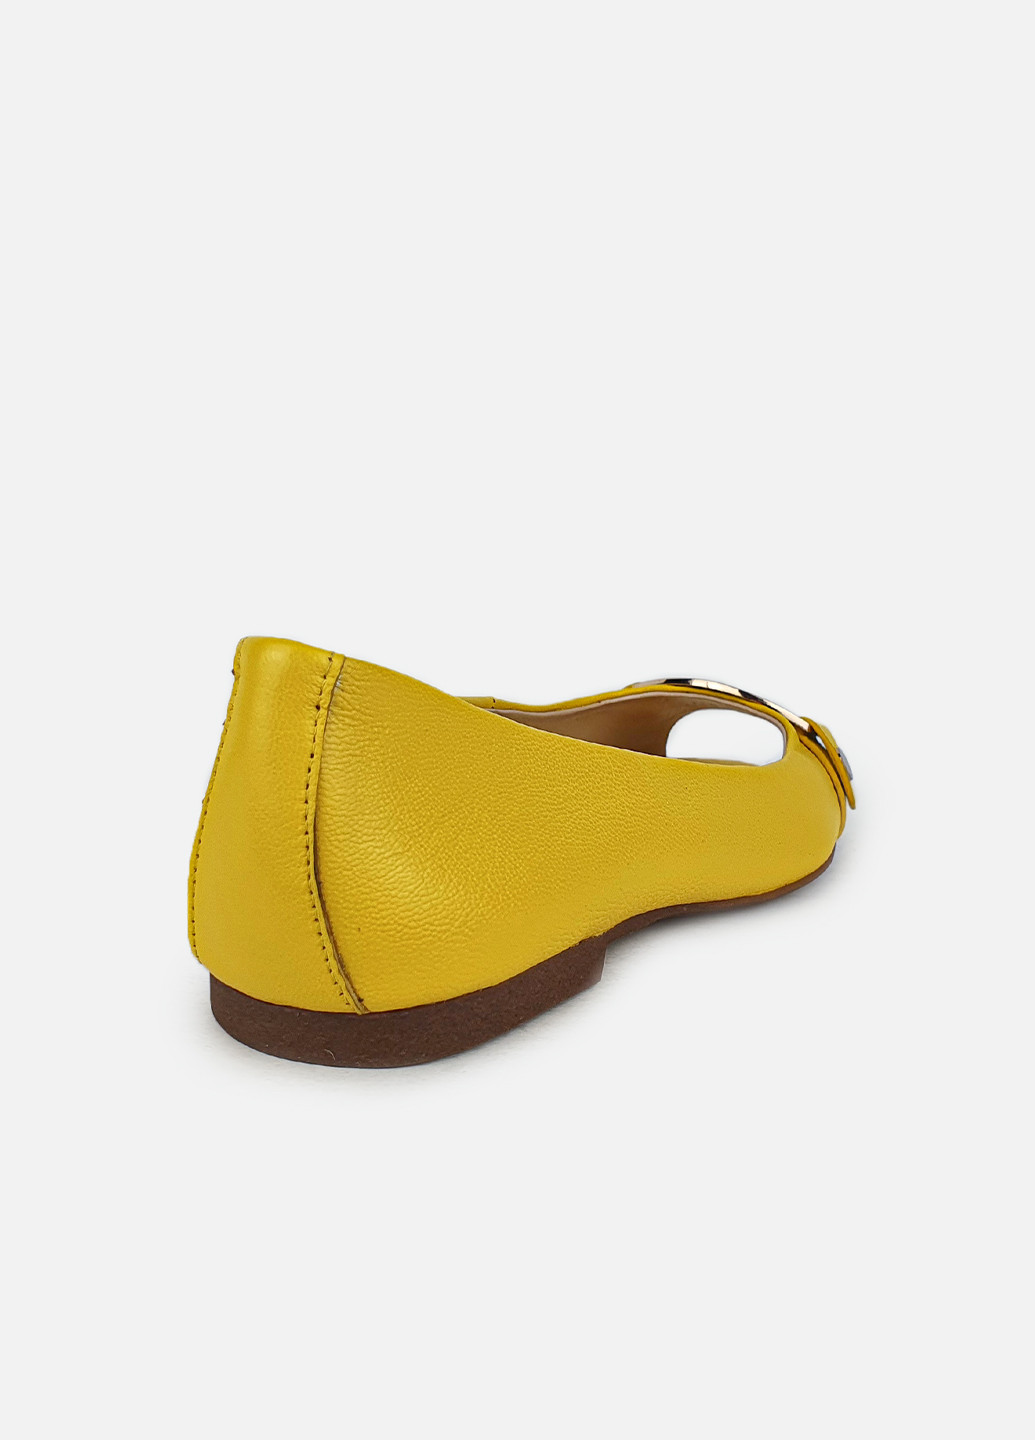 Желтые повседневные женские желтые кожаные с открытым носком Glossi